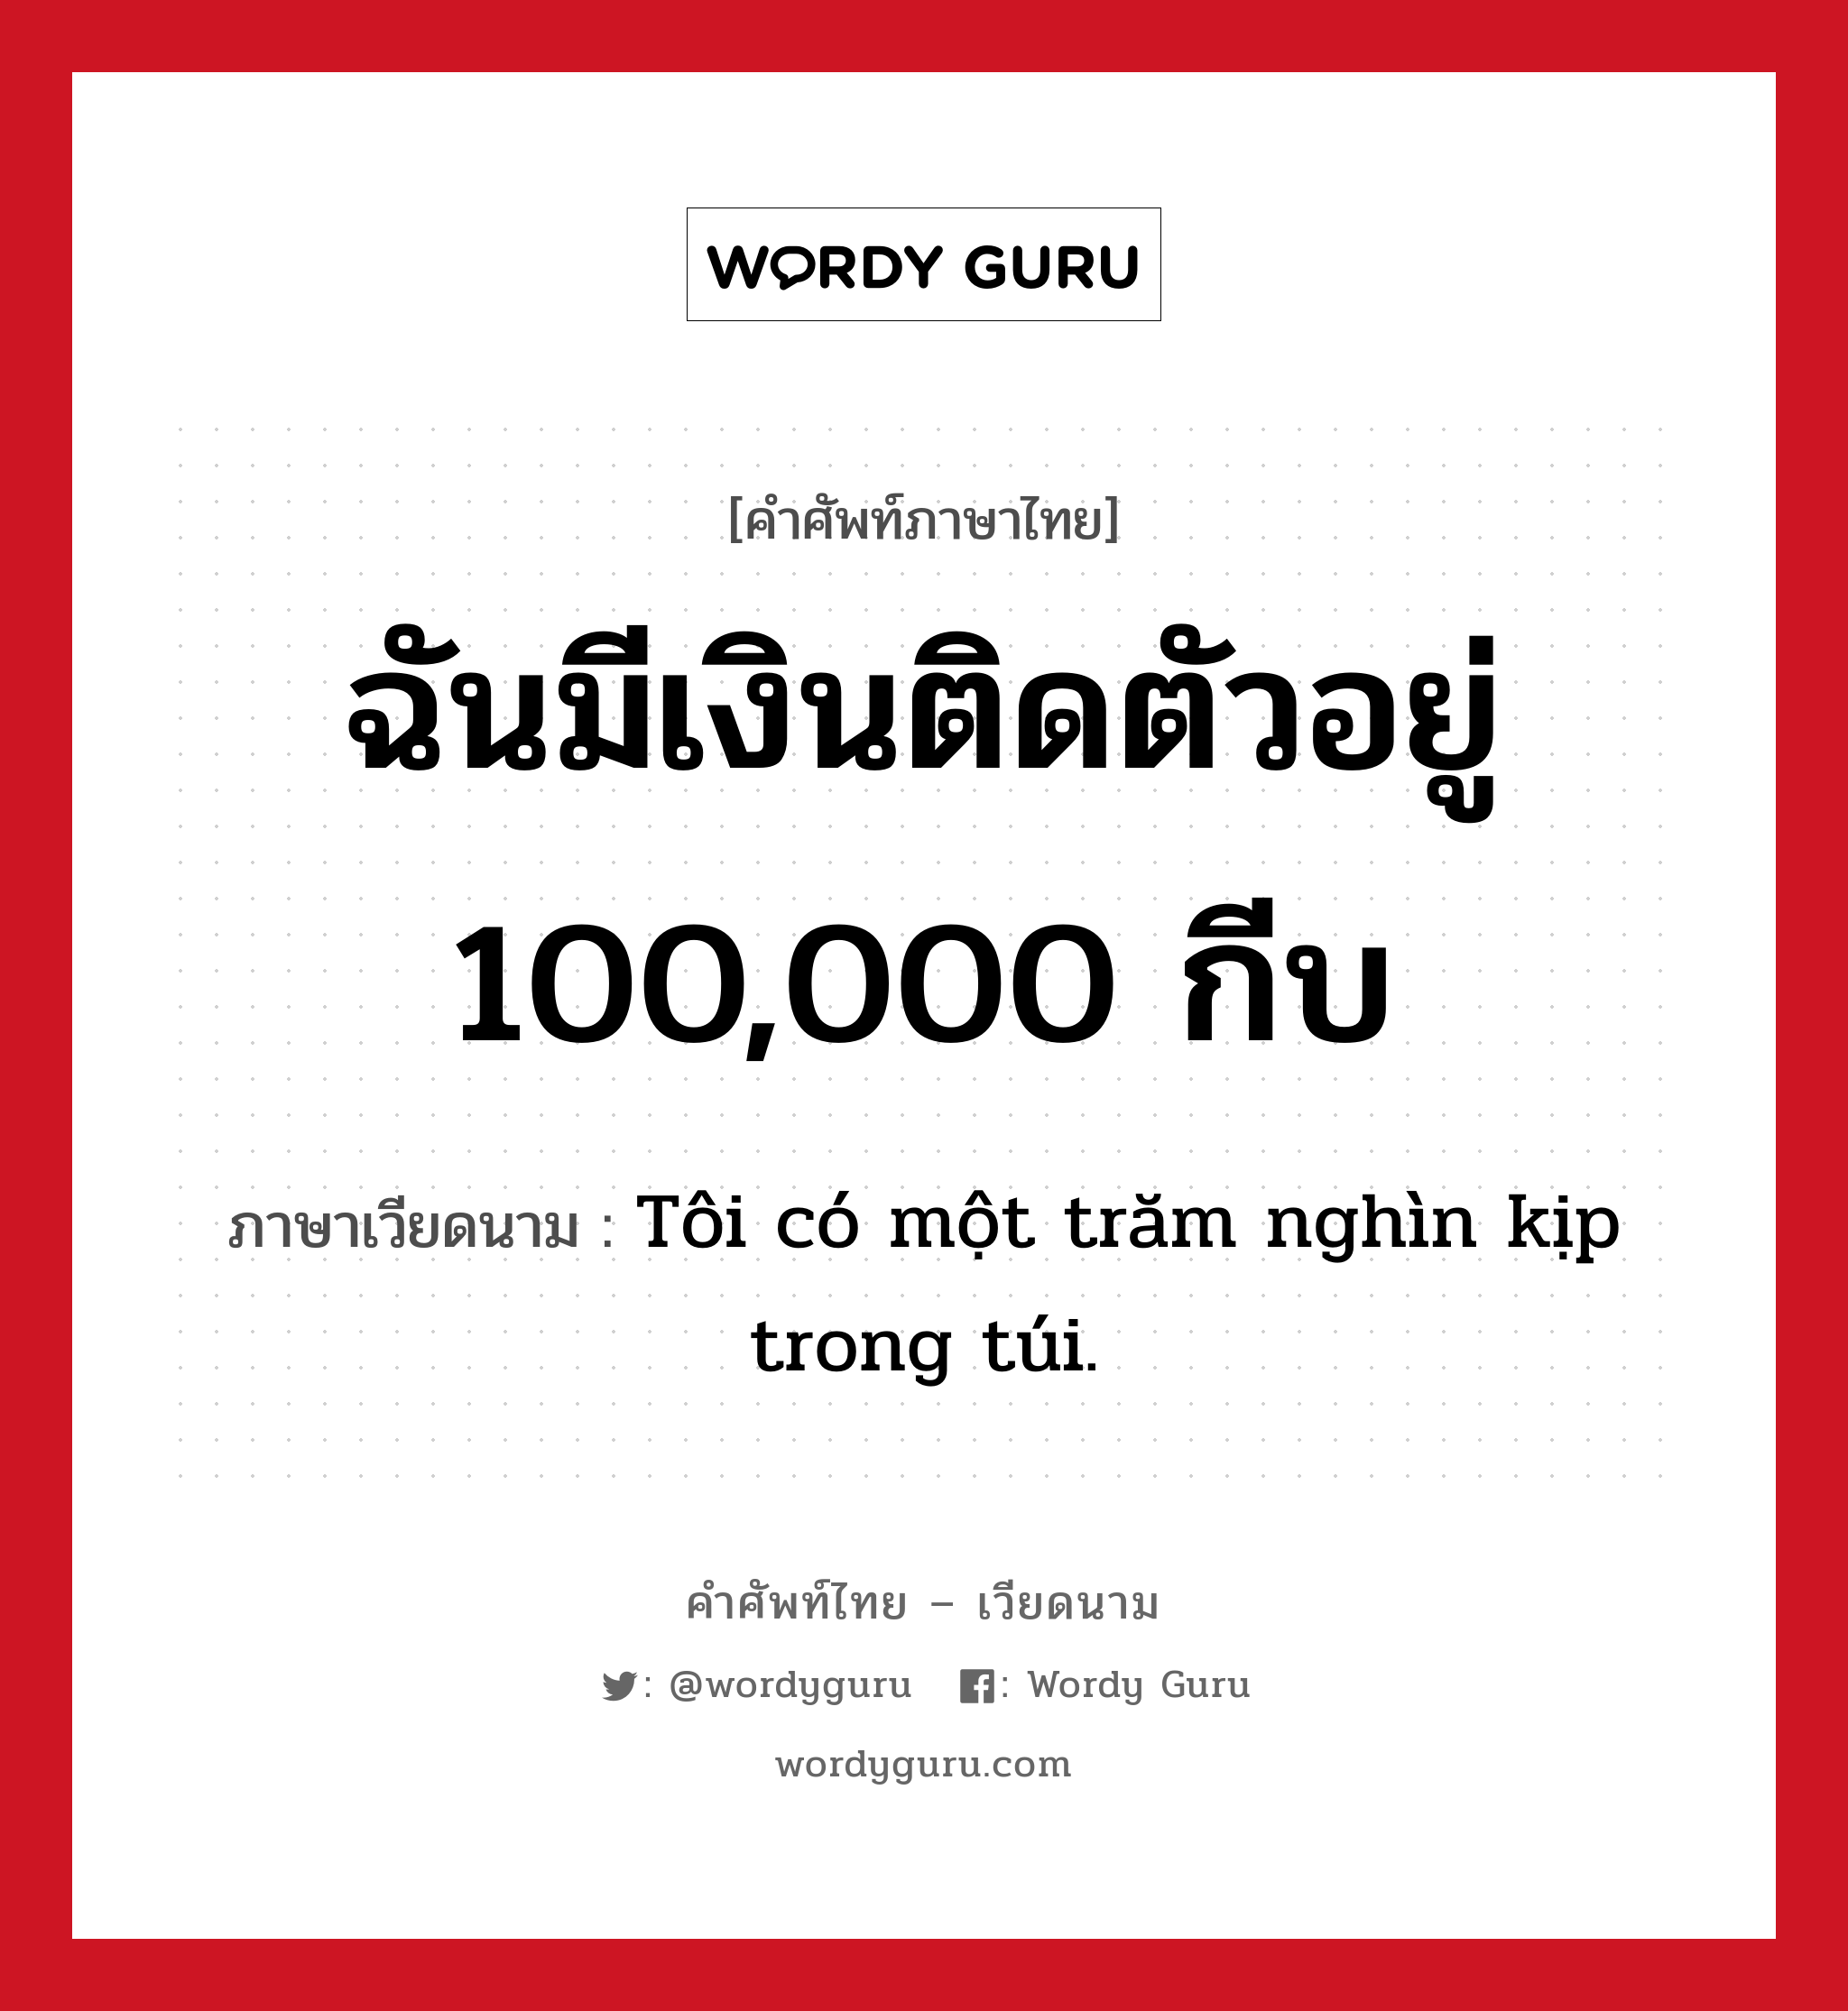 ฉันมีเงินติดตัวอยู่ 100,000 กีบ แปลว่า? คำศัพท์ในกลุ่มประเภท การนับเลขและเวลา, คำศัพท์ภาษาไทย - เวียดนาม ฉันมีเงินติดตัวอยู่ 100,000 กีบ ภาษาเวียดนาม Tôi có một trăm nghìn kịp trong túi. หมวด การนับเลขและเวลา หมวด การนับเลขและเวลา